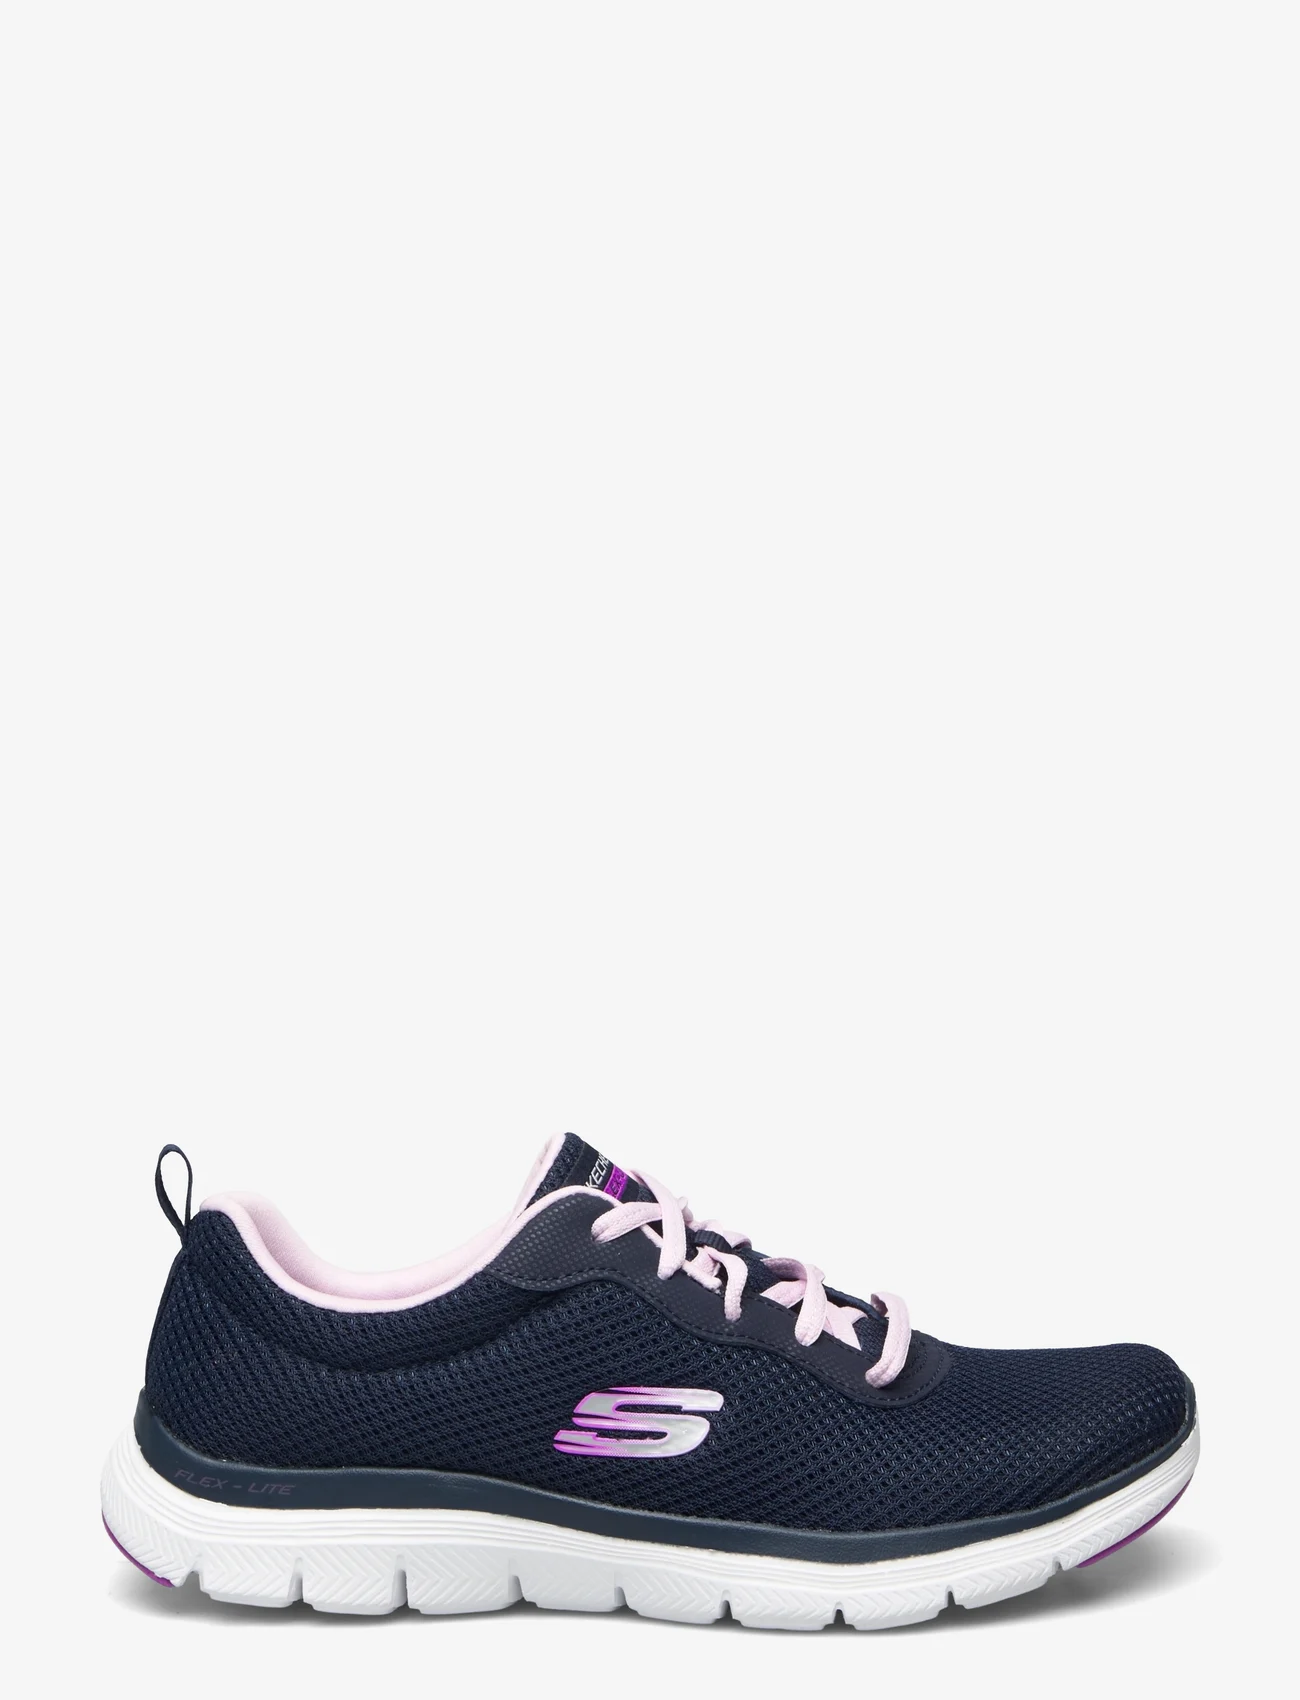 Skechers - Womens Flex Appeal 4.0 - Brilliant View - sneakers med lavt skaft - nvlv navy lavender - 1